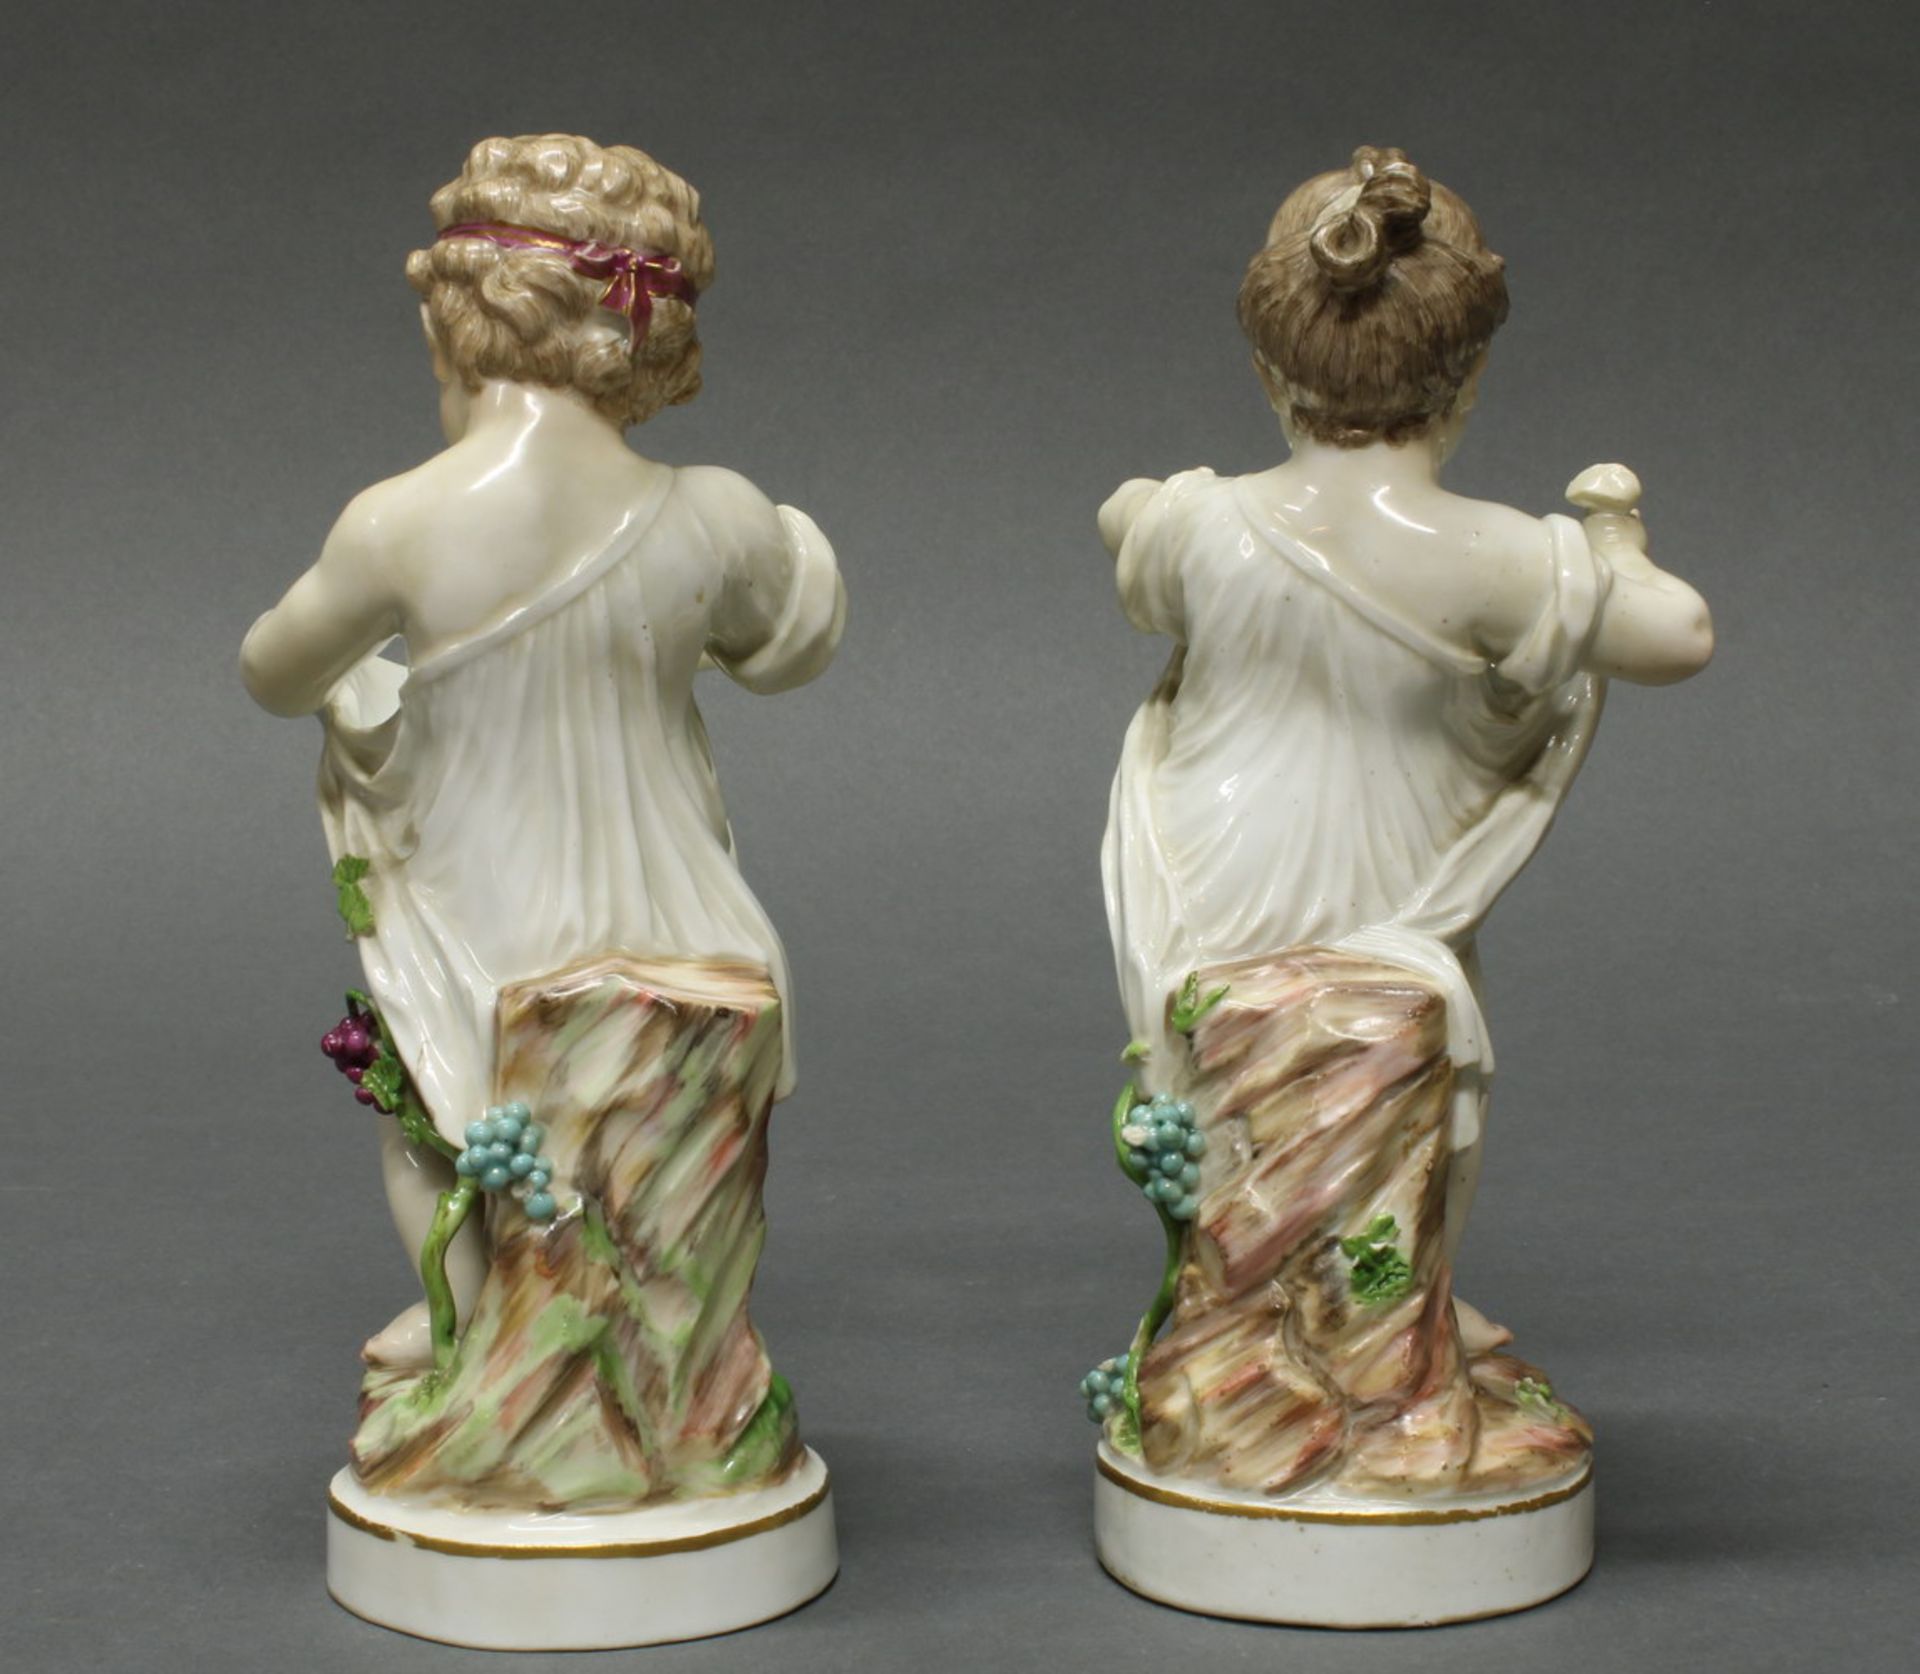 2 Porzellanfiguren, "Mädchen", "Knabe", wohl Meissen um 1770-1780, Schwertermarke, Amoretten mit - Image 2 of 3